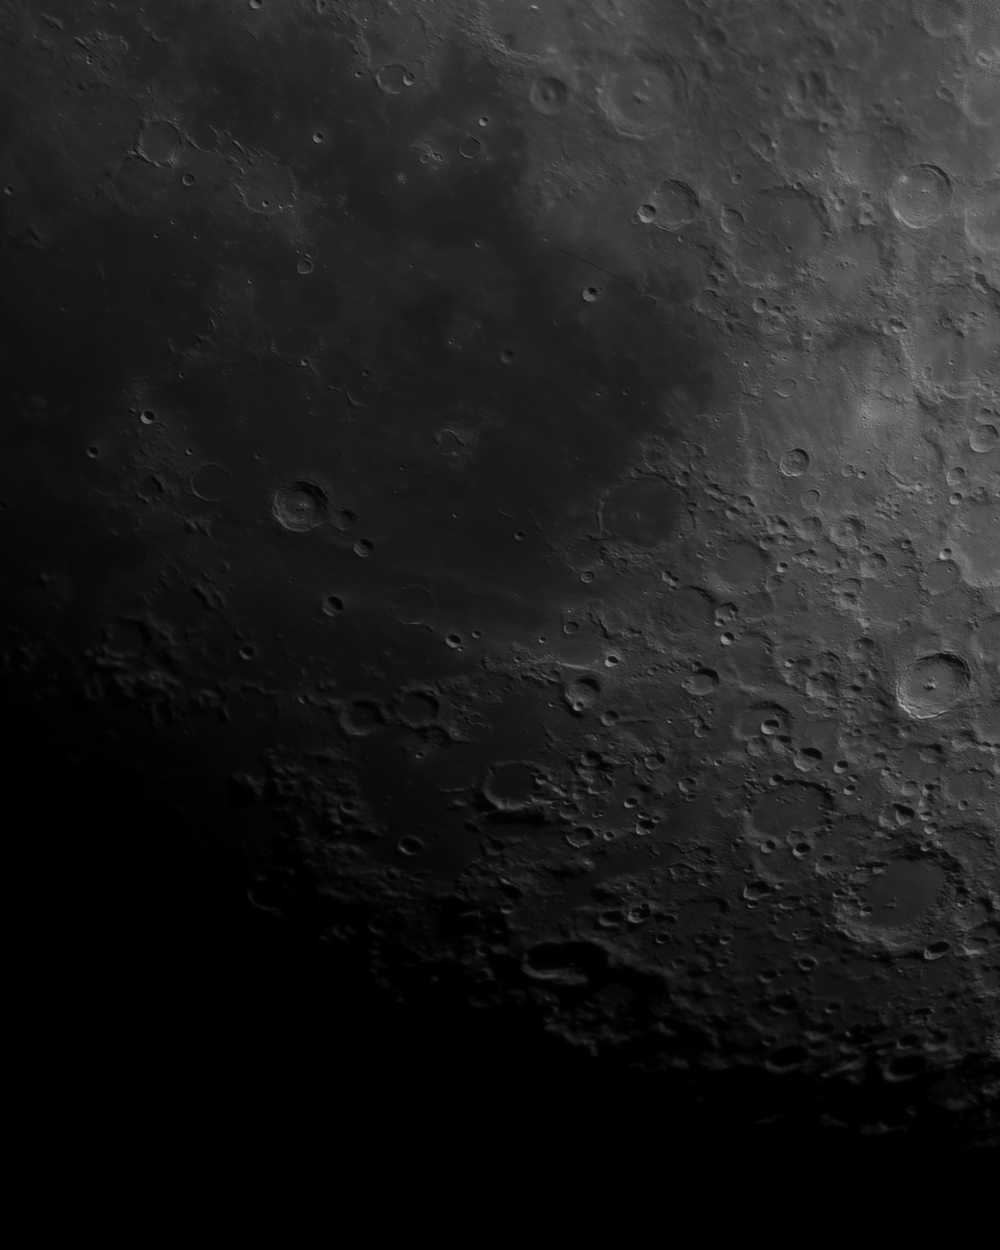 Часть панорамы Луны (Кратеры: Тихо, Питат, Клавий, Гесиод, Буллиальд. Море Облаков)